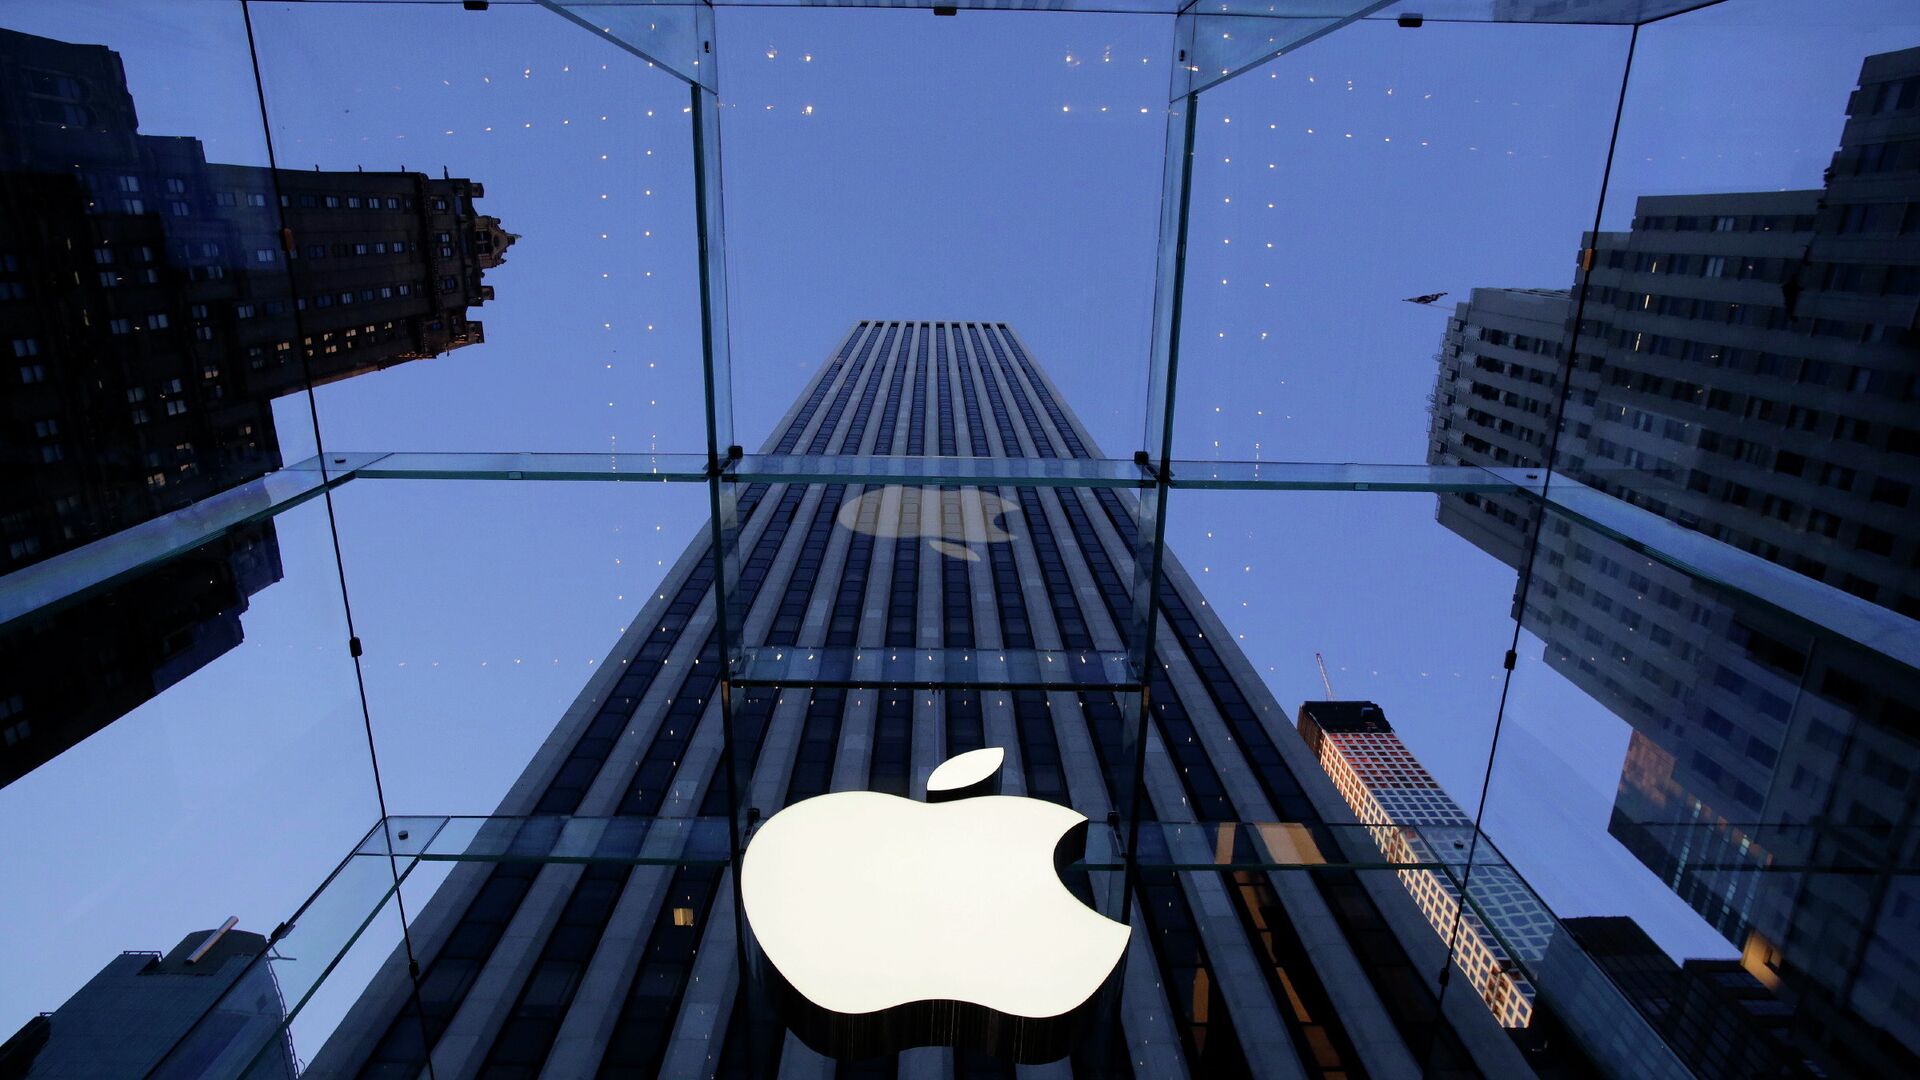 Логотип компании Apple над входом в здание в Нью-Йорке, США - РИА Новости, 1920, 19.02.2021